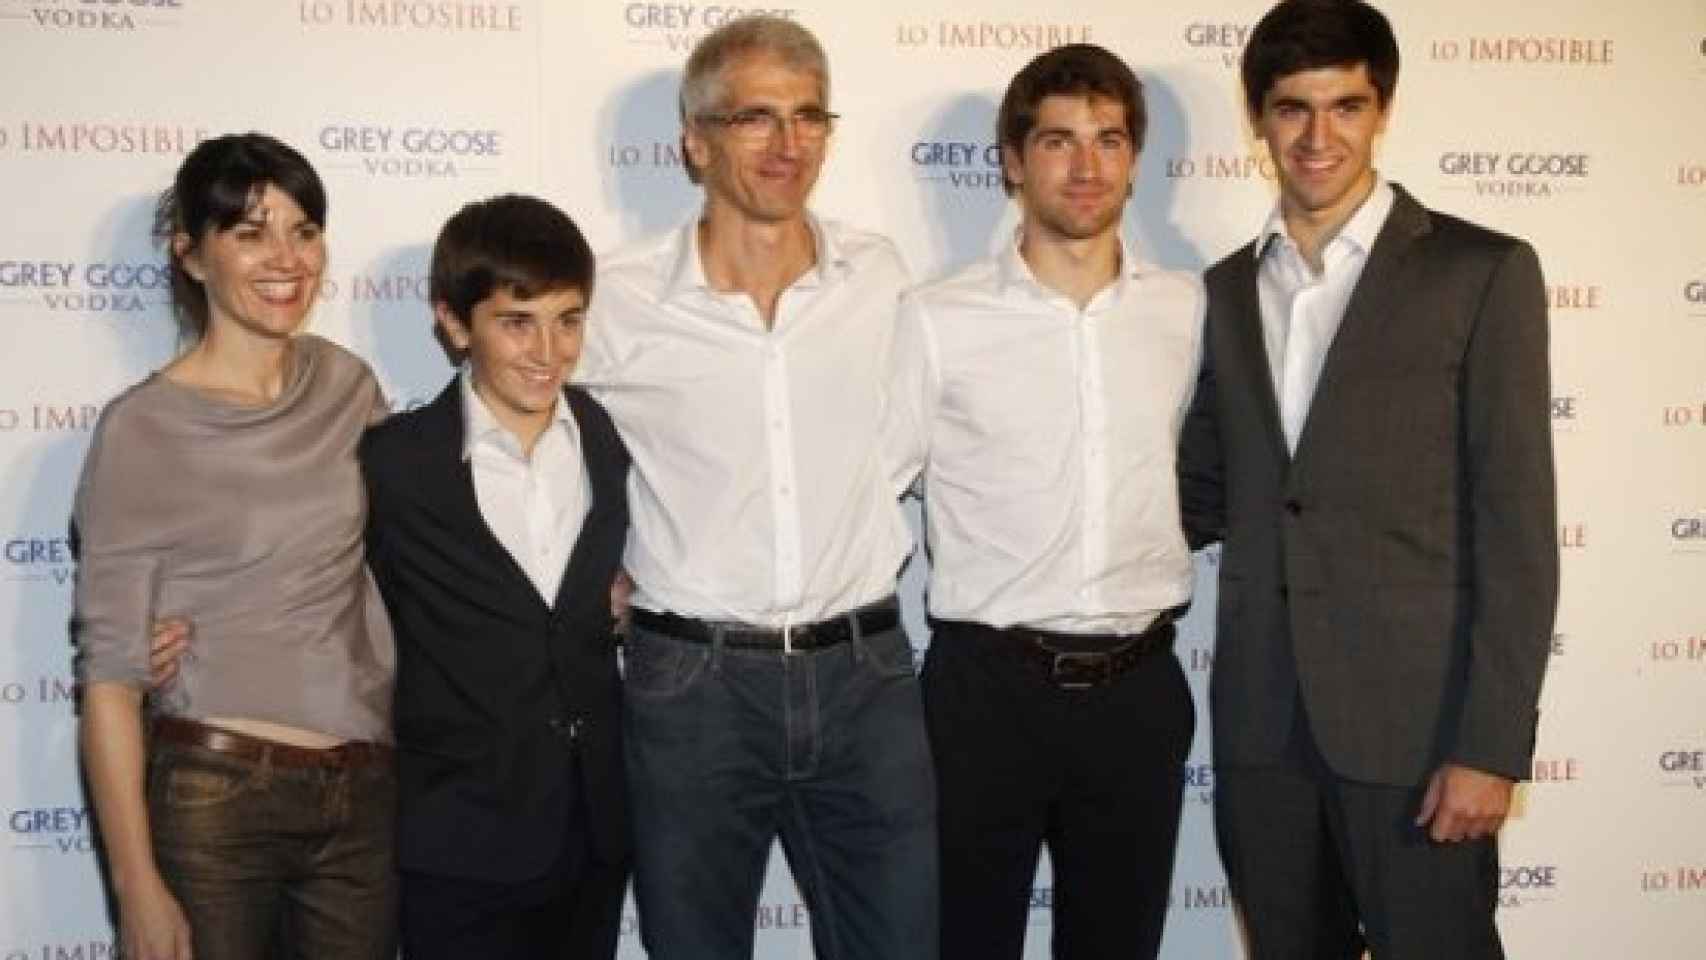 La familia Álvarez Belón al completo. De izquierda a derecha: María (la madre), Simón (el pequeño), Enrique (el padre), Lucas (el mayor) y Tomás